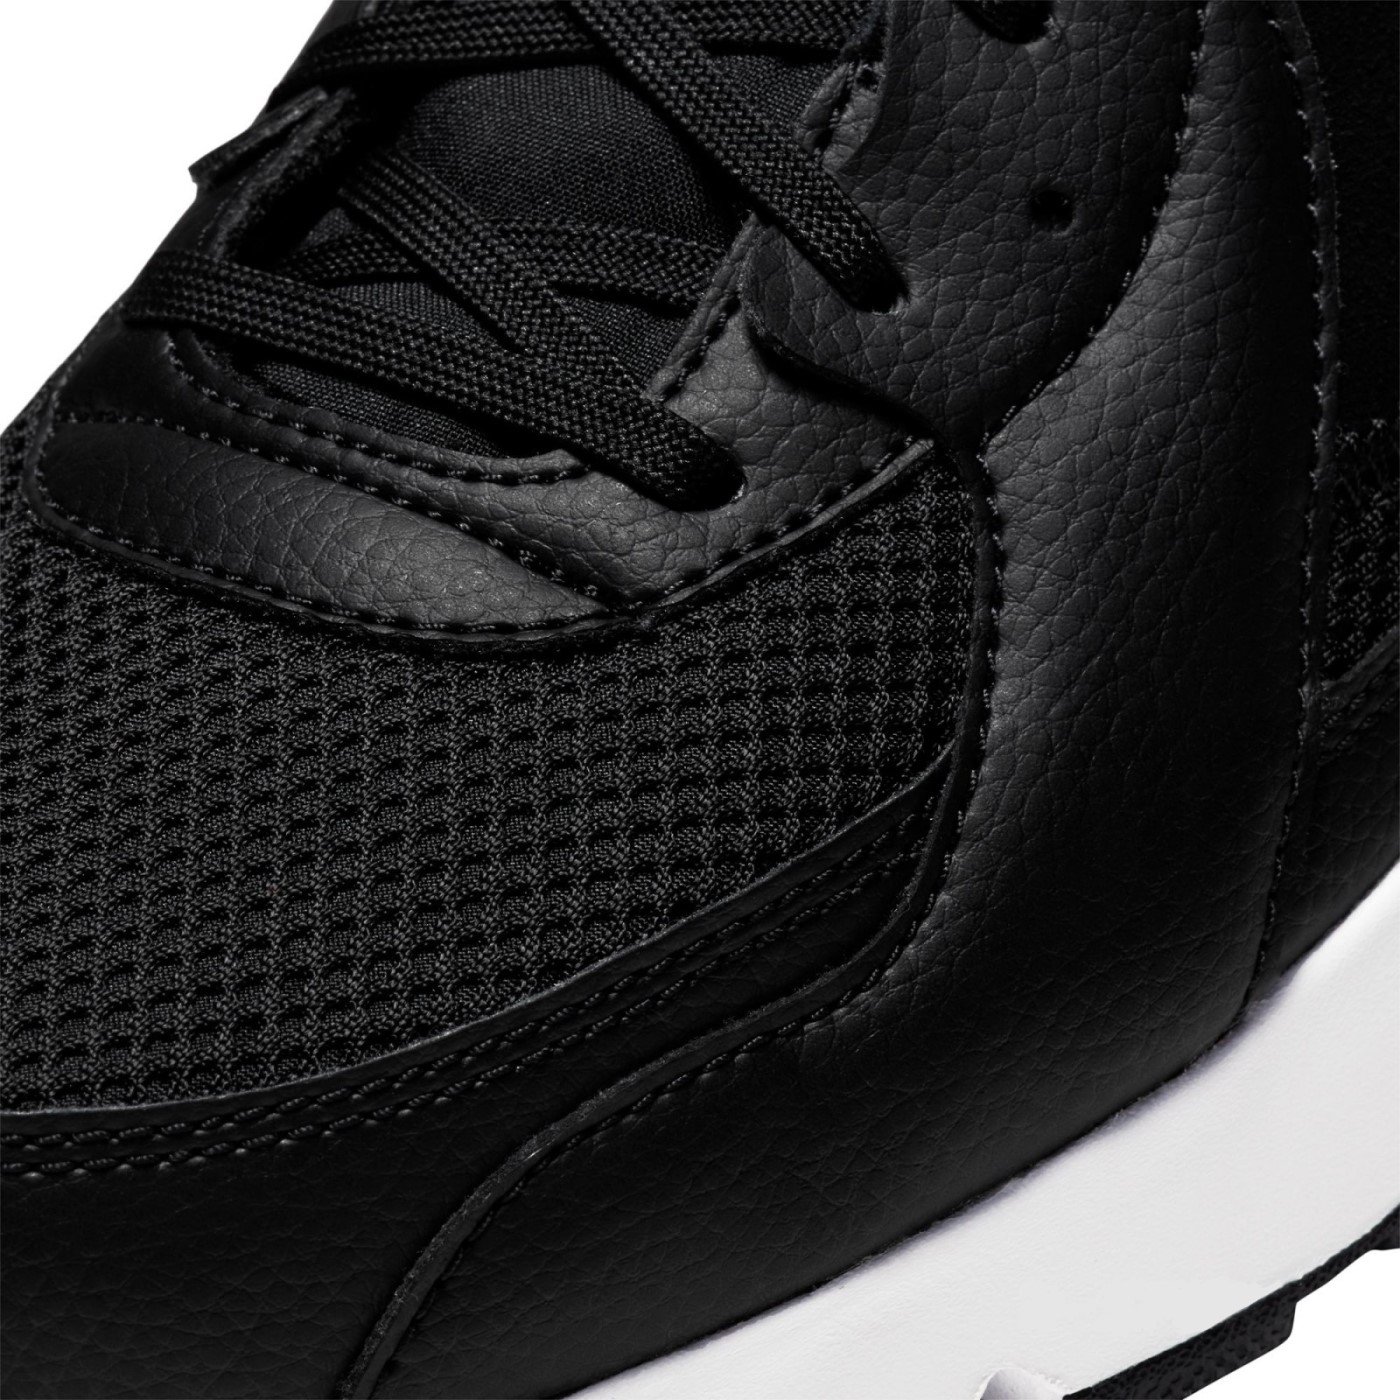 Obuv Nike Air Max Excee M - černá/bílá